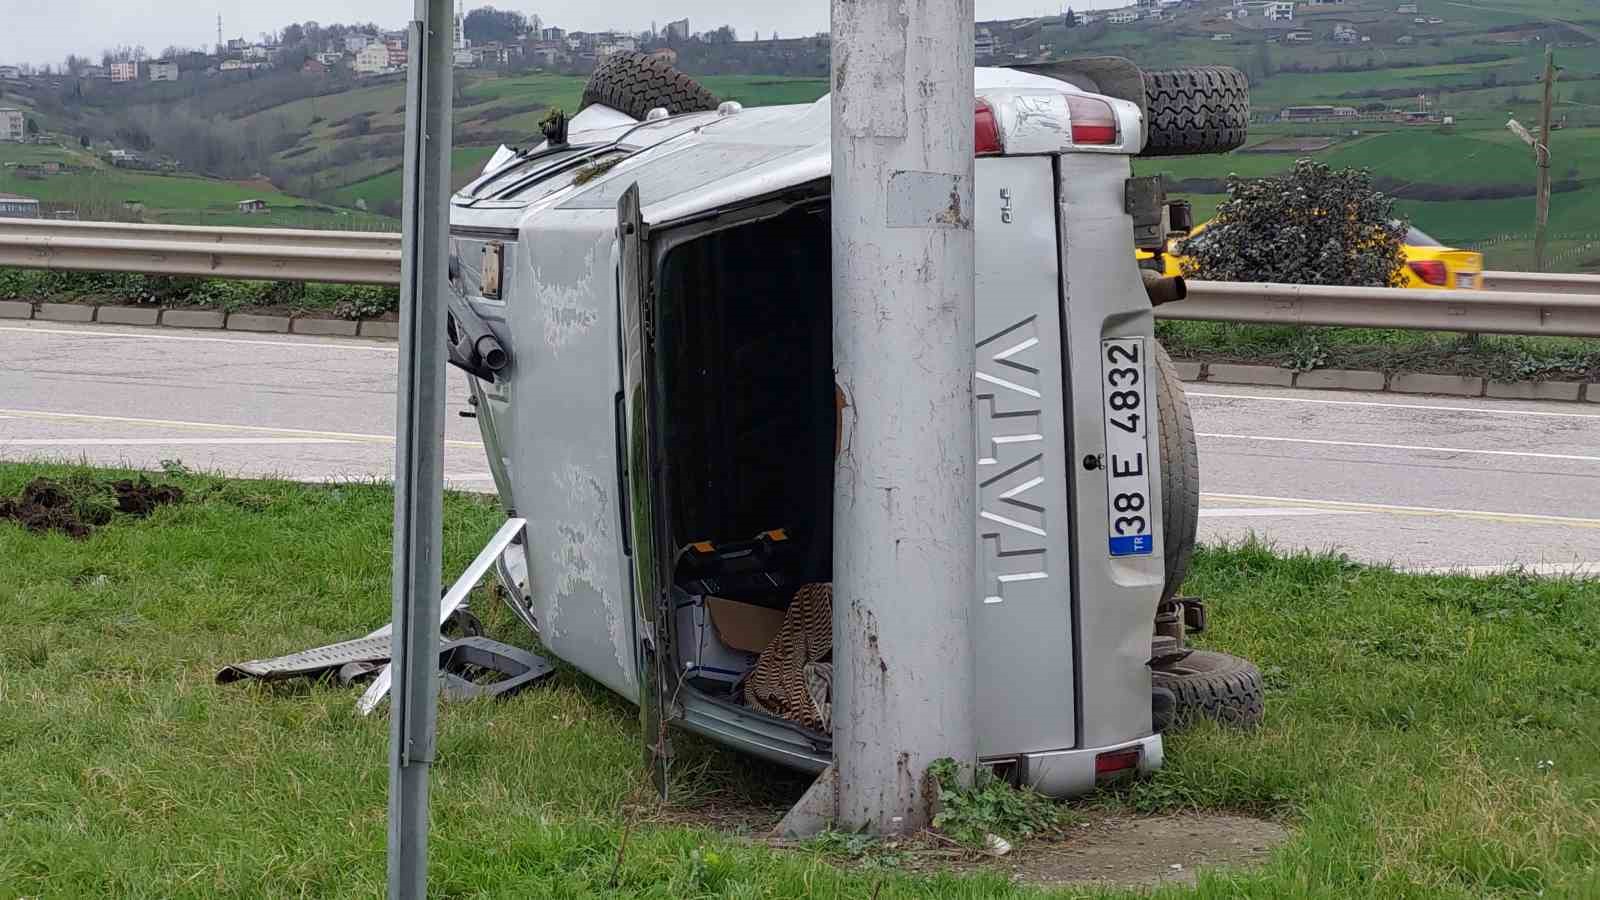 Samsun’da trafik kazası: 2 yaralı
